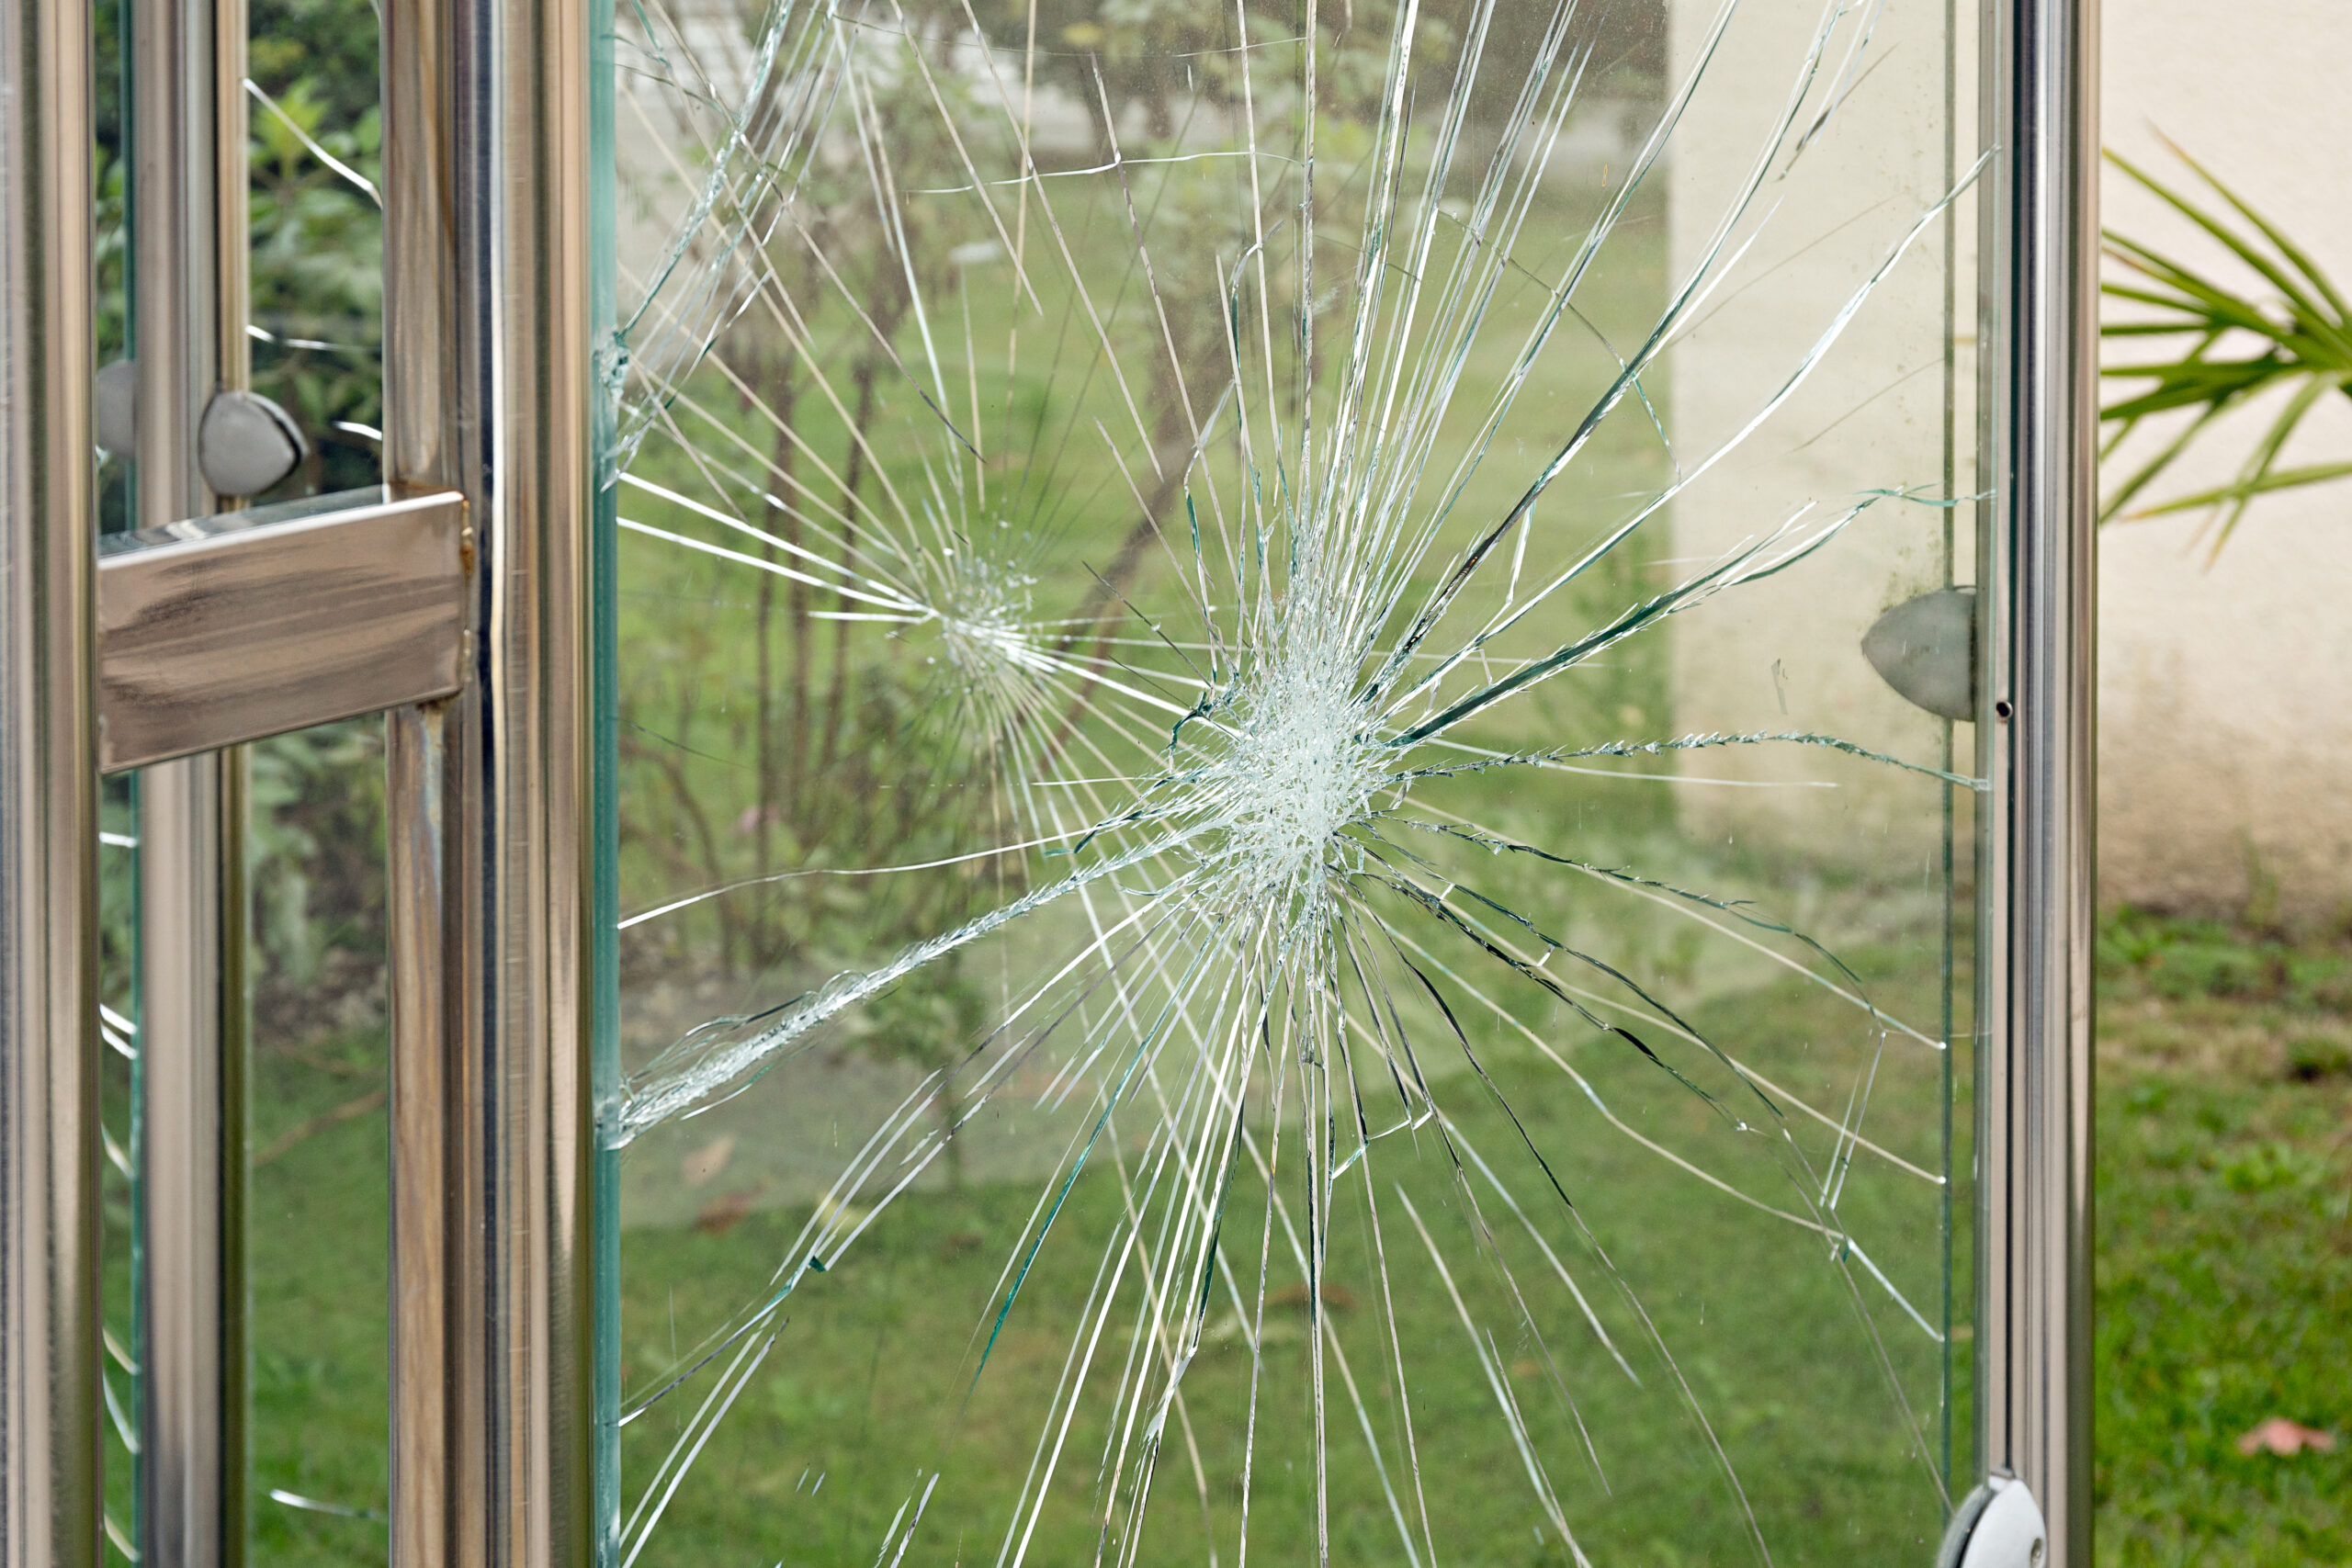 Broken glass social problems